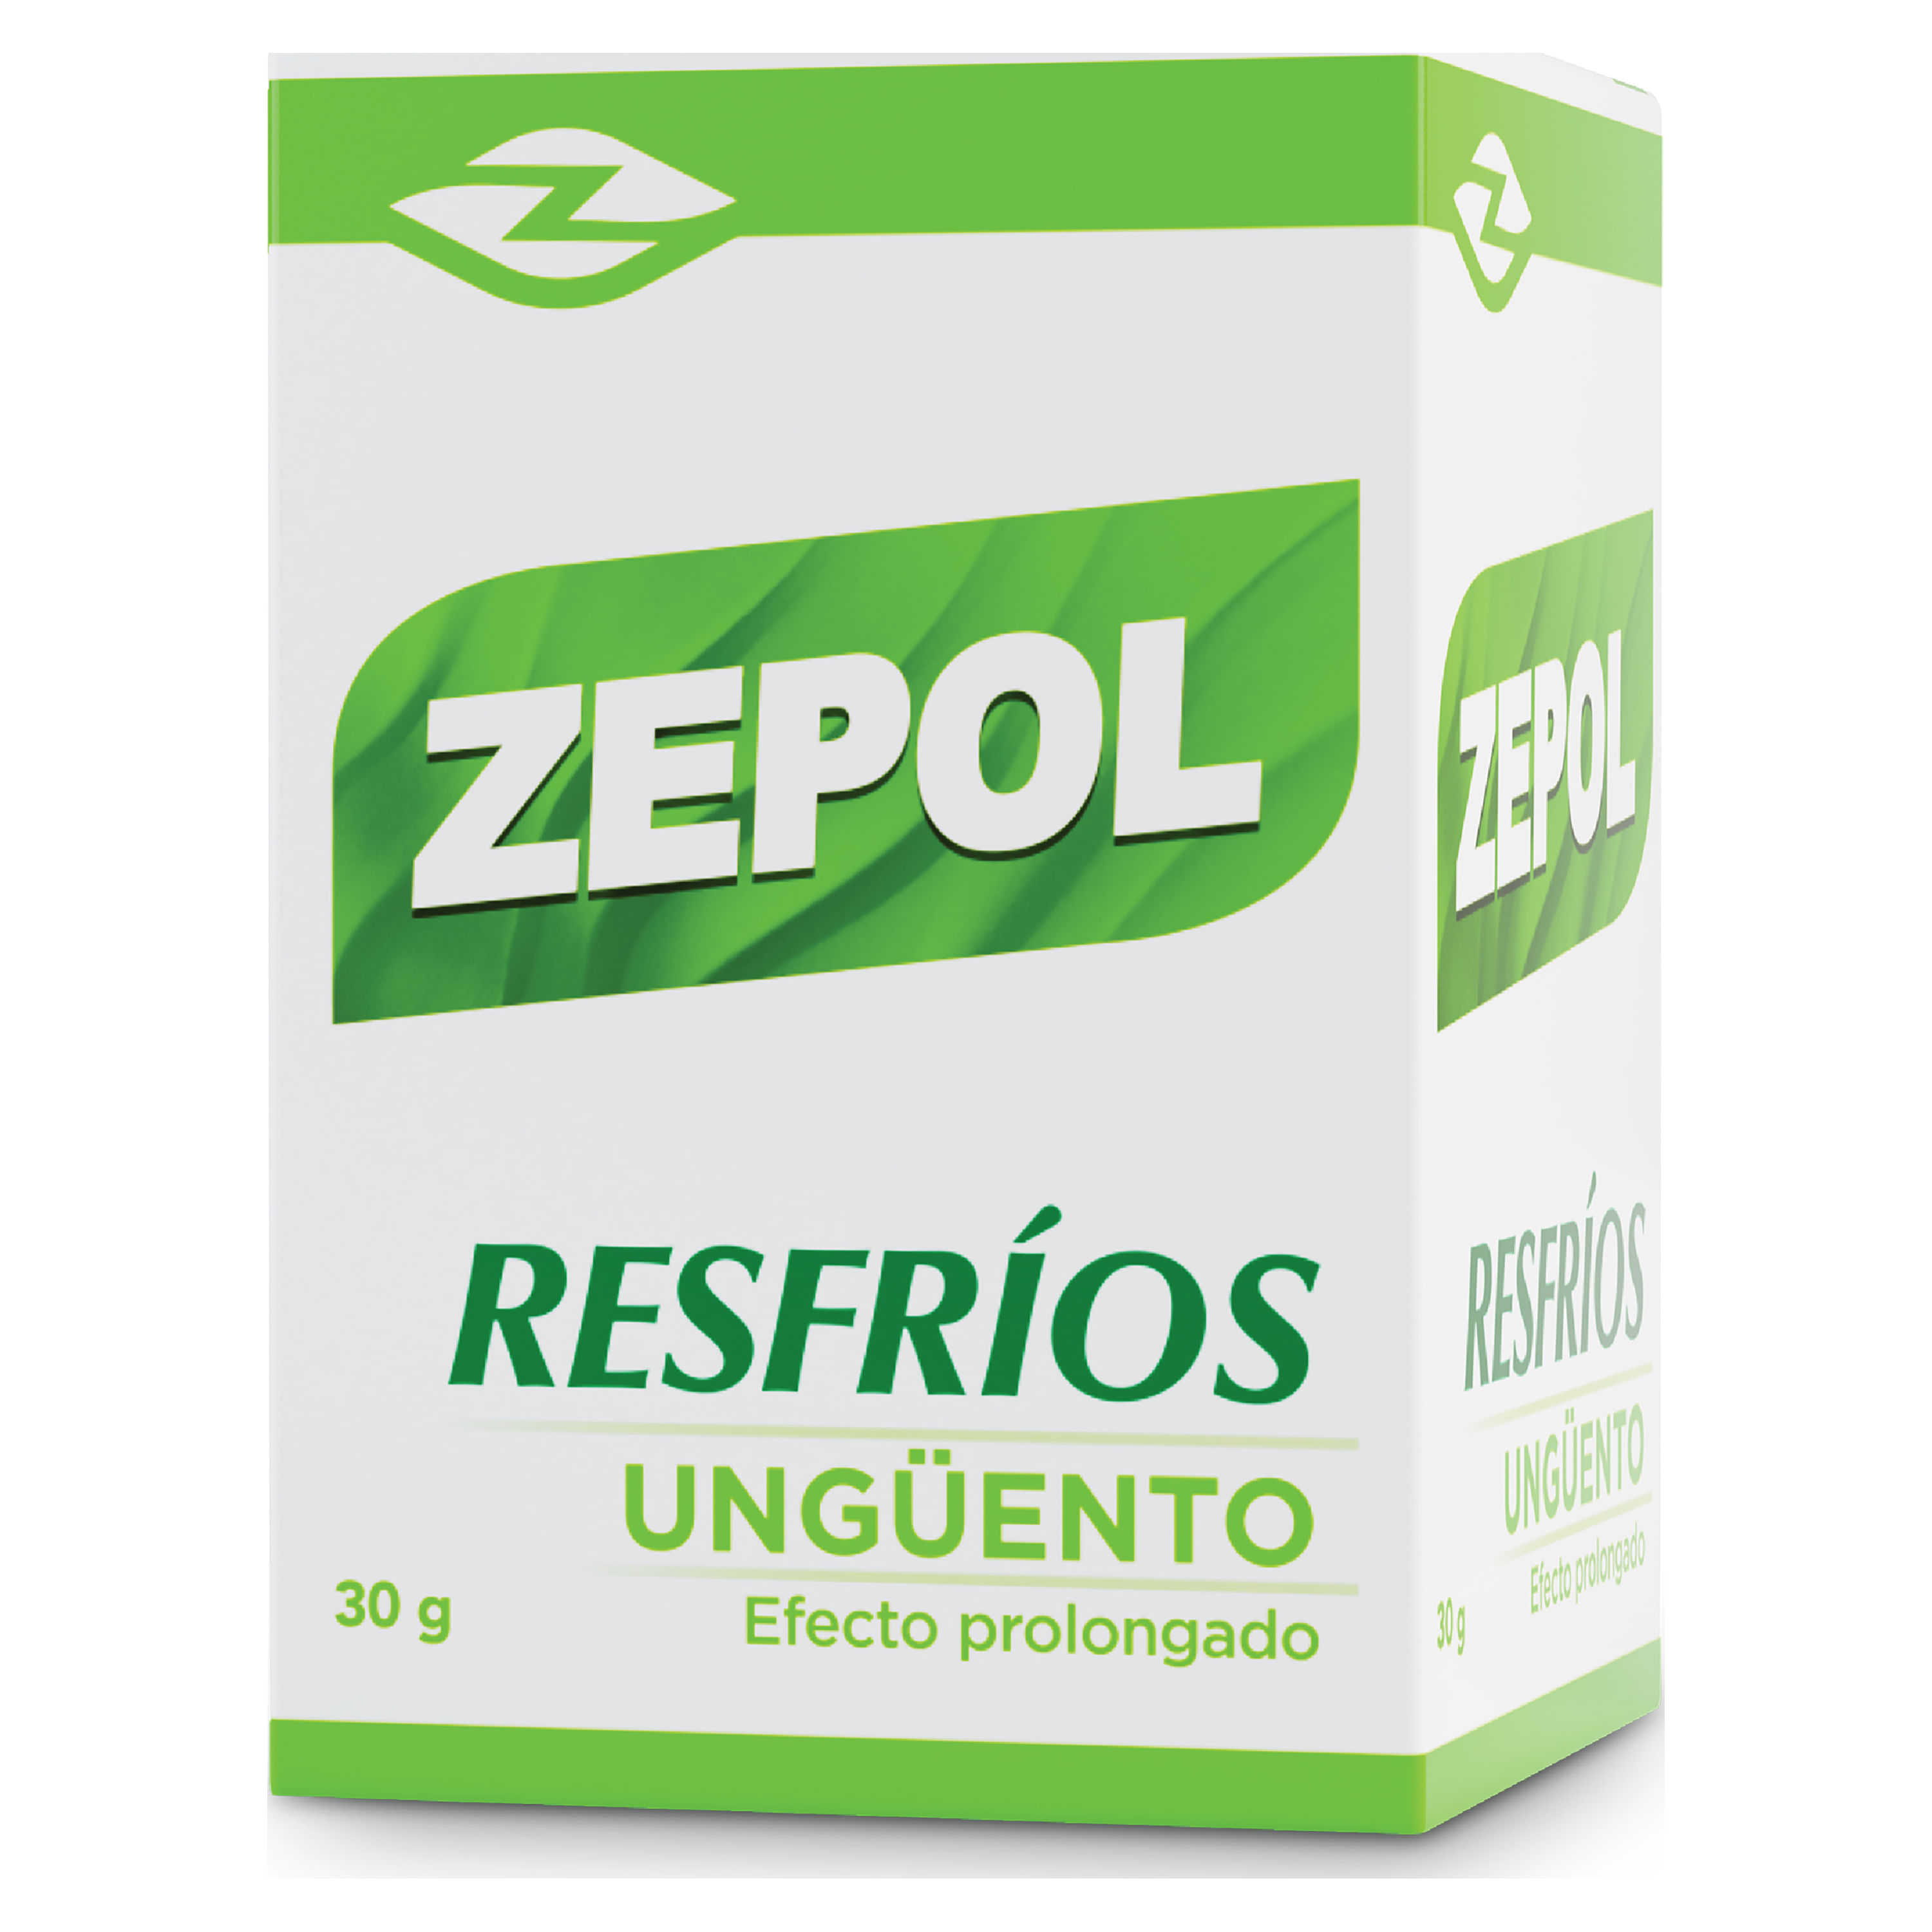 Ung-ento-Zepol-Adulto-30gr-1-3077